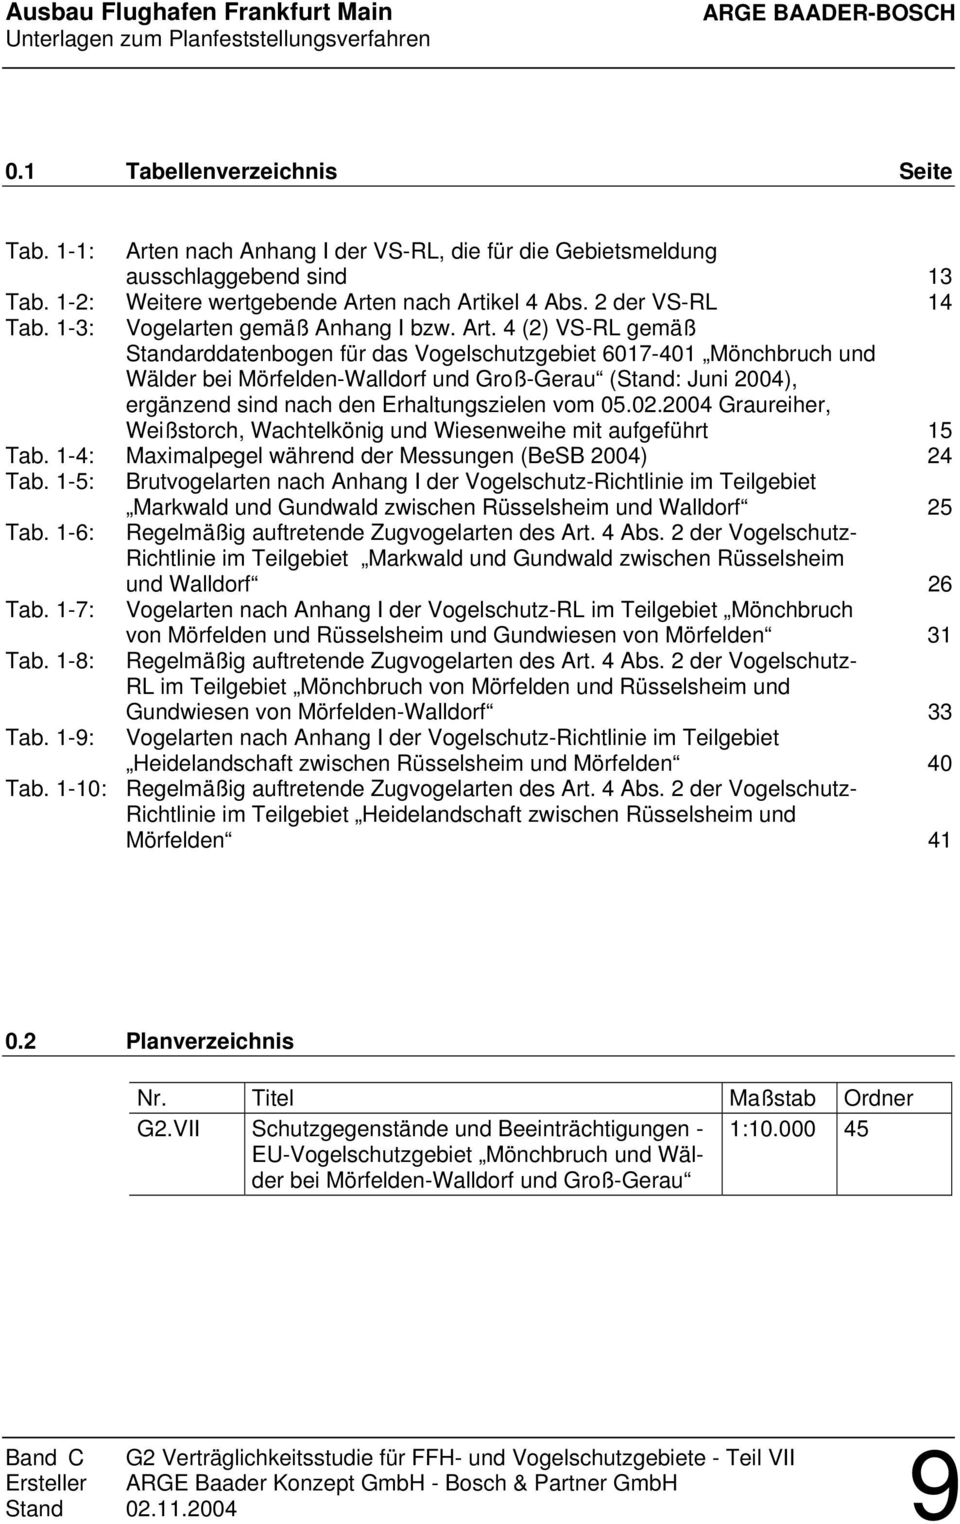 4 (2) VS-RL gemäß Standarddatenbogen für das Vogelschutzgebiet 6017-401 Mönchbruch und Wälder bei Mörfelden-Walldorf und Groß-Gerau (Stand: Juni 2004), ergänzend sind nach den Erhaltungszielen vom 05.